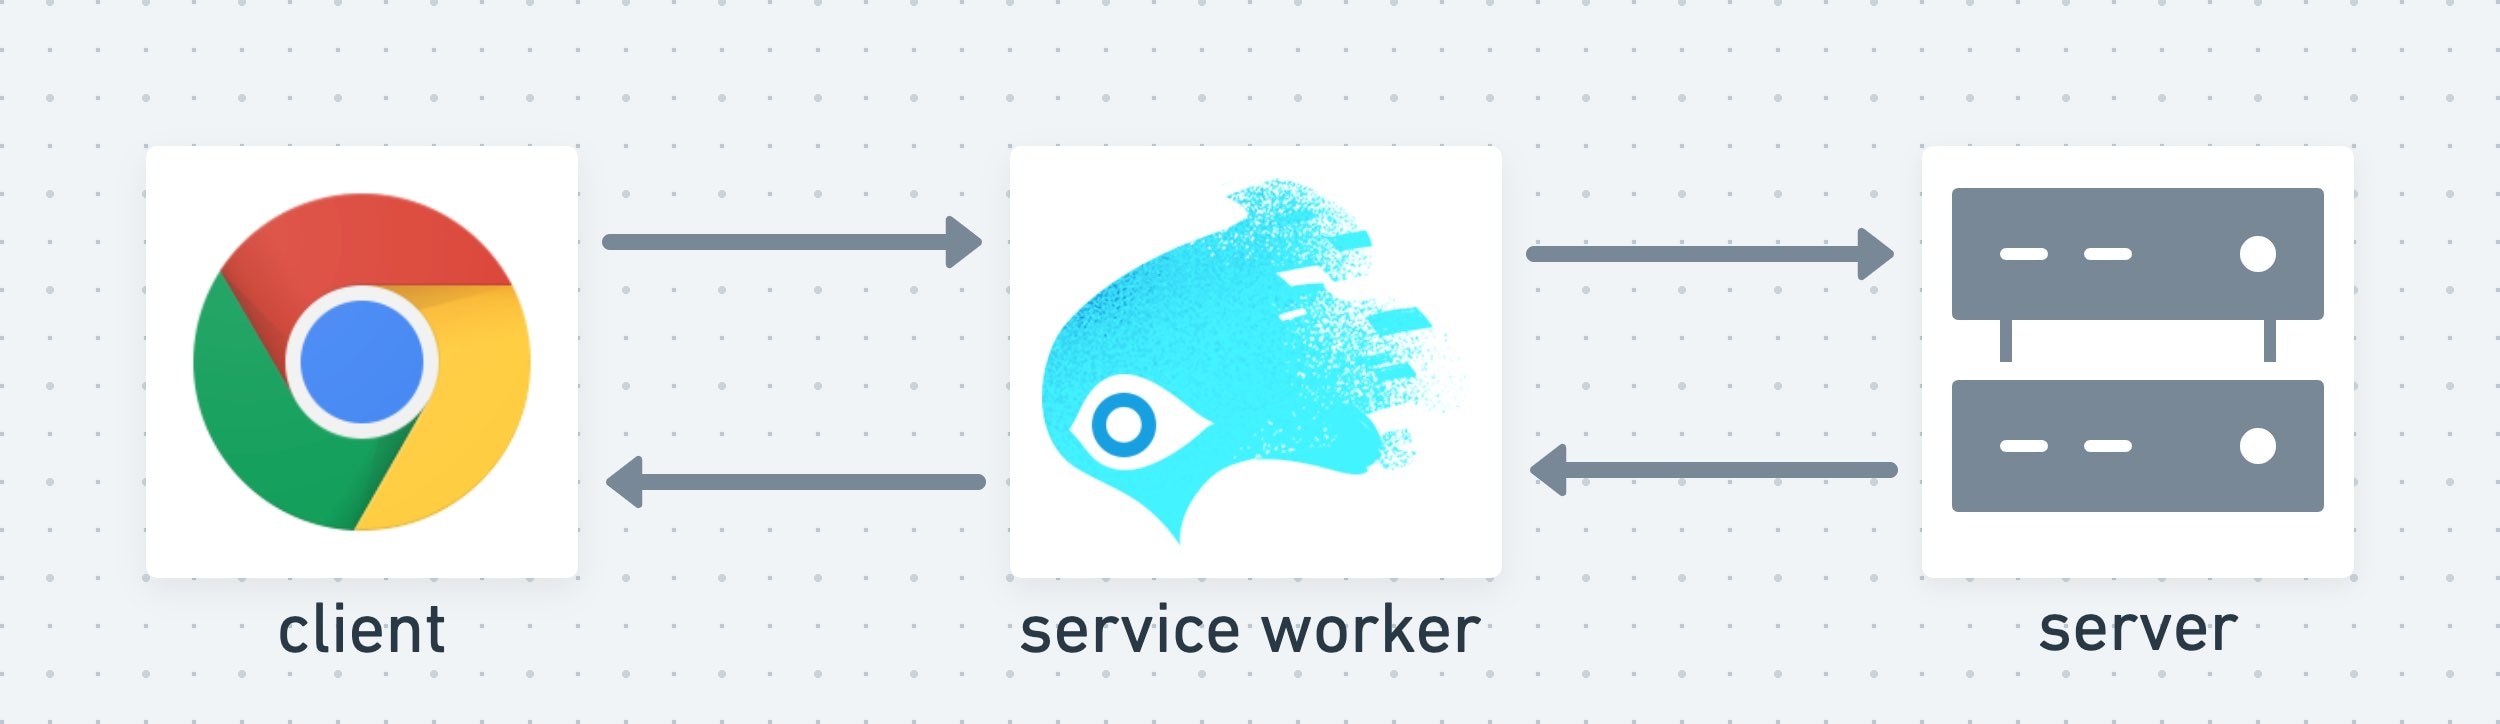 Un service worker agisce da livello intermedio tra il client e il server